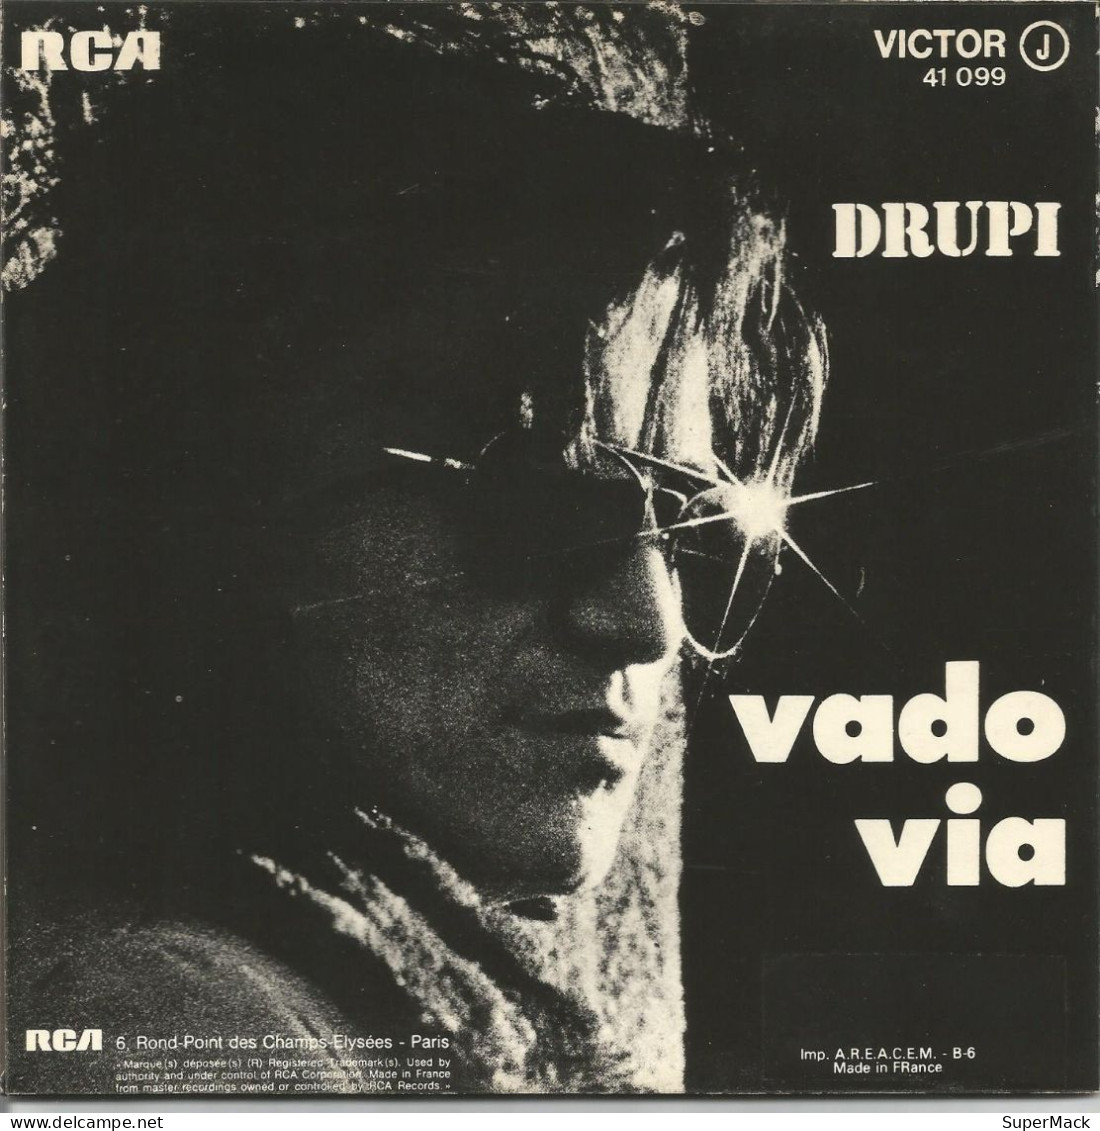 45T Drupi - Vado Via - RCA Victor 41.099 - France - 1973 - Collector's Editions